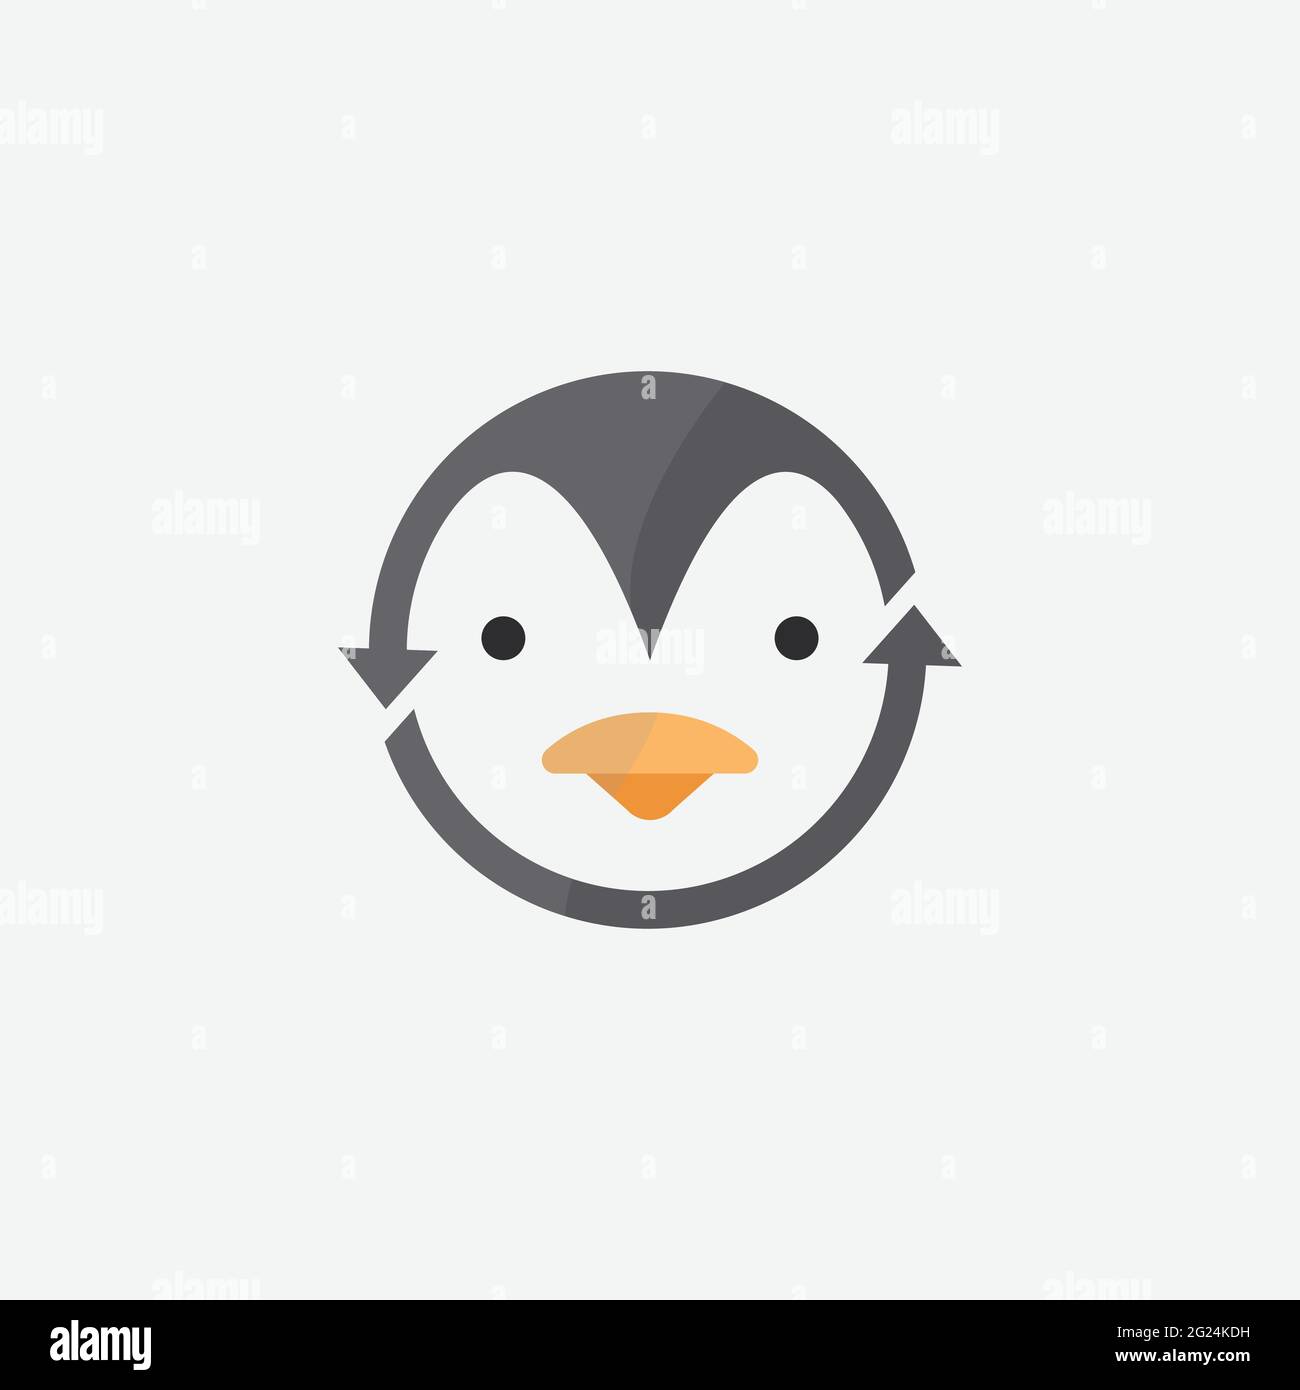 Immagine vettoriale modello logo Penguin. Disegno del logo di Penguin, illustrazione del disegno vettoriale del simbolo dell'icona dell'animale Illustrazione Vettoriale